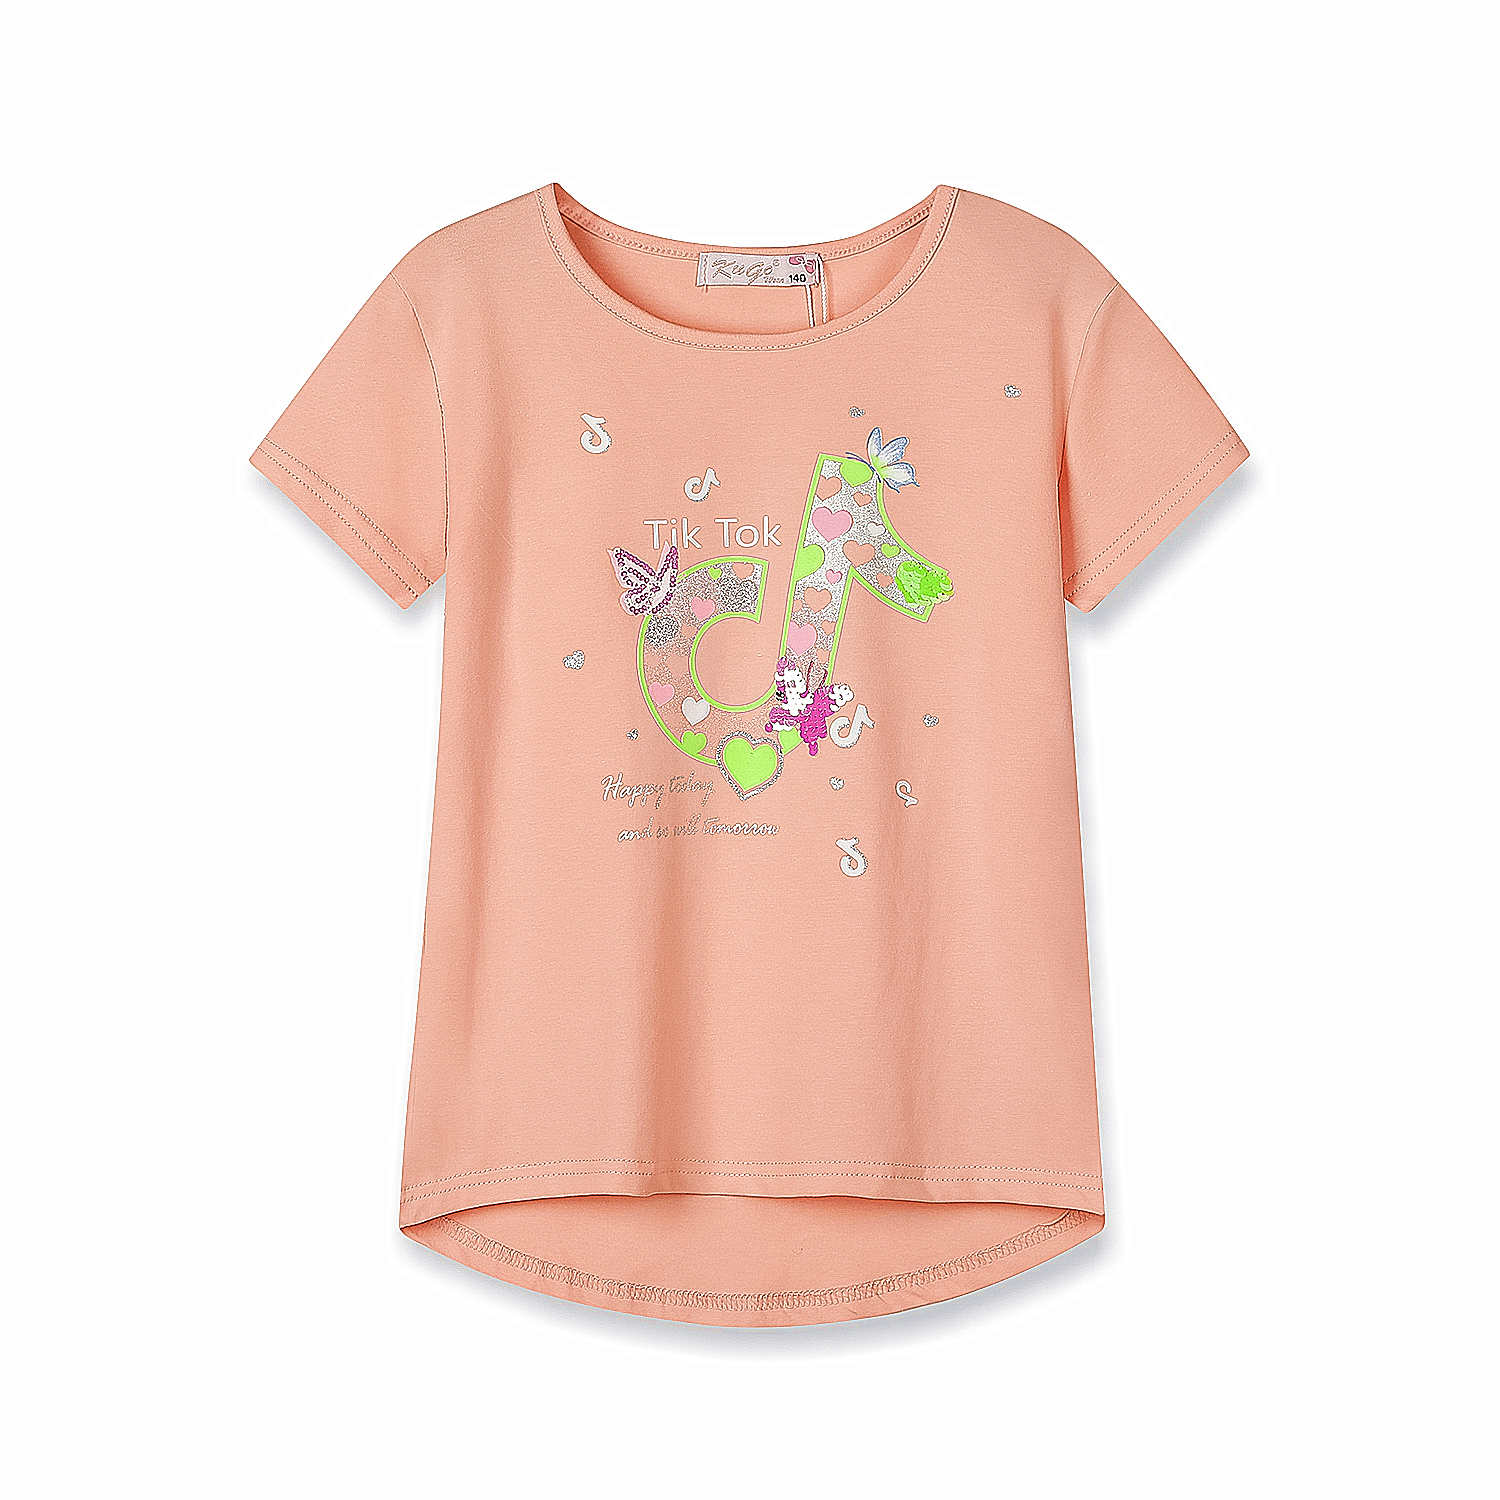 Dívčí triko s flitry - KUGO WK0808, lososová Barva: Lososová, Velikost: 152